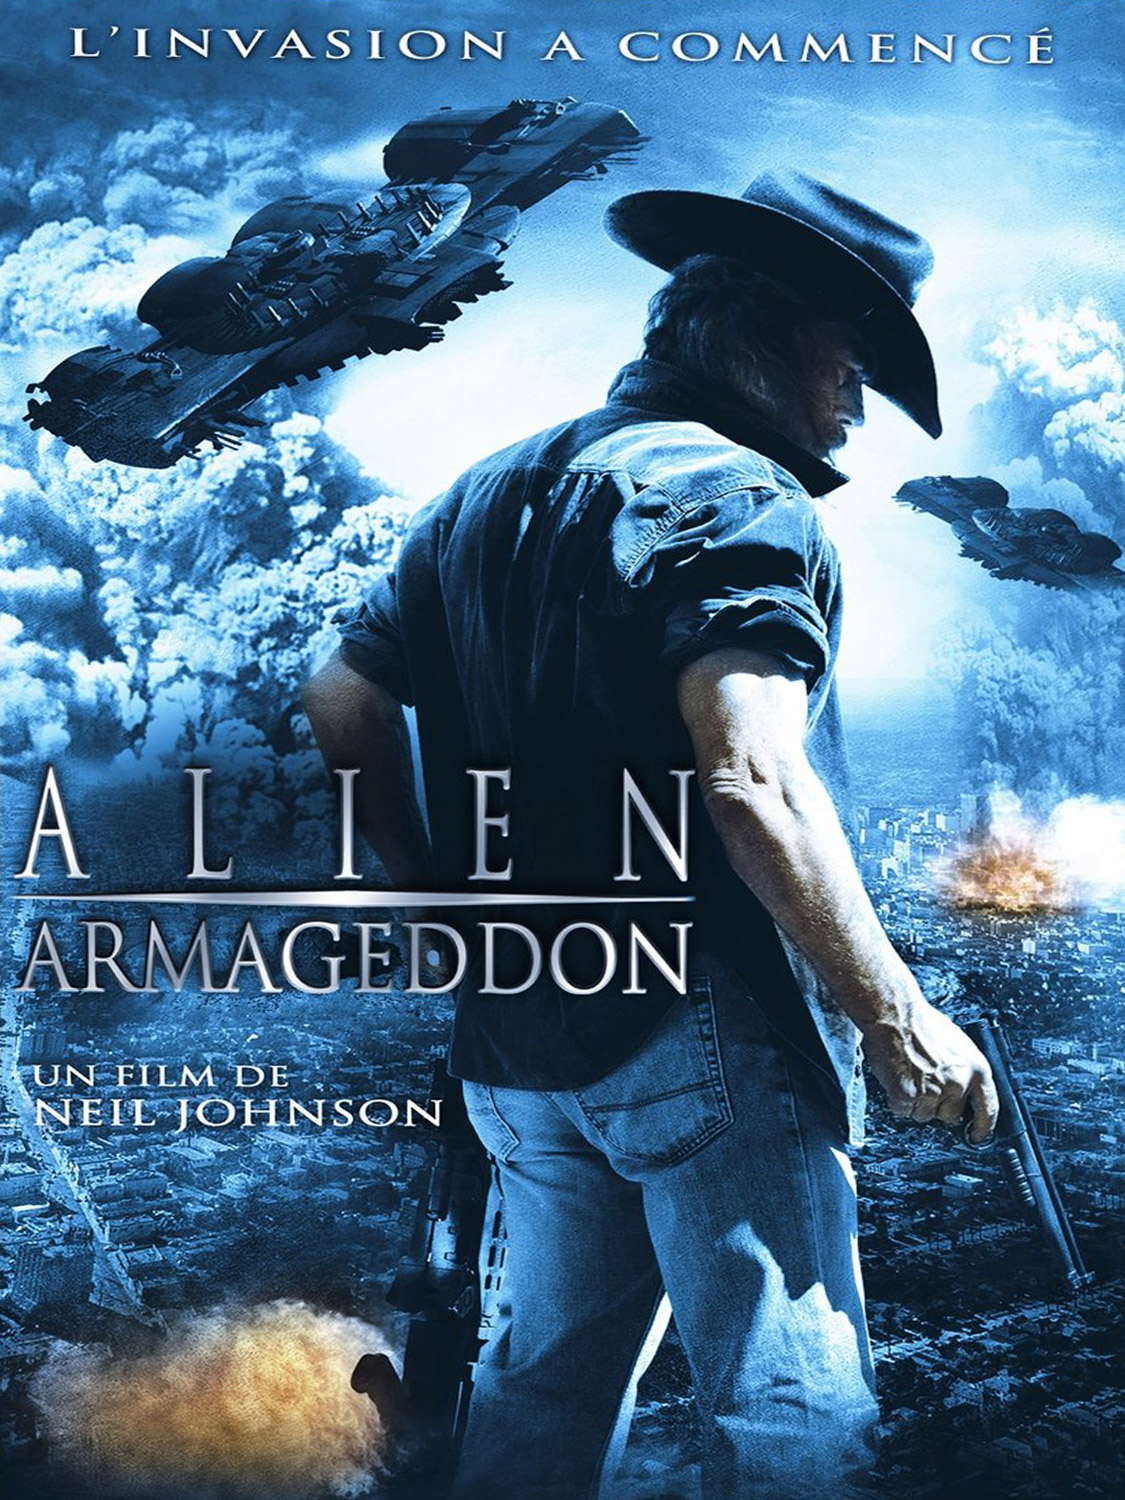 ดูหนังออนไลน์ฟรี Alien Armageddon วันสิ้นโลก สงครามเอเลี่ยนยึดเมือง